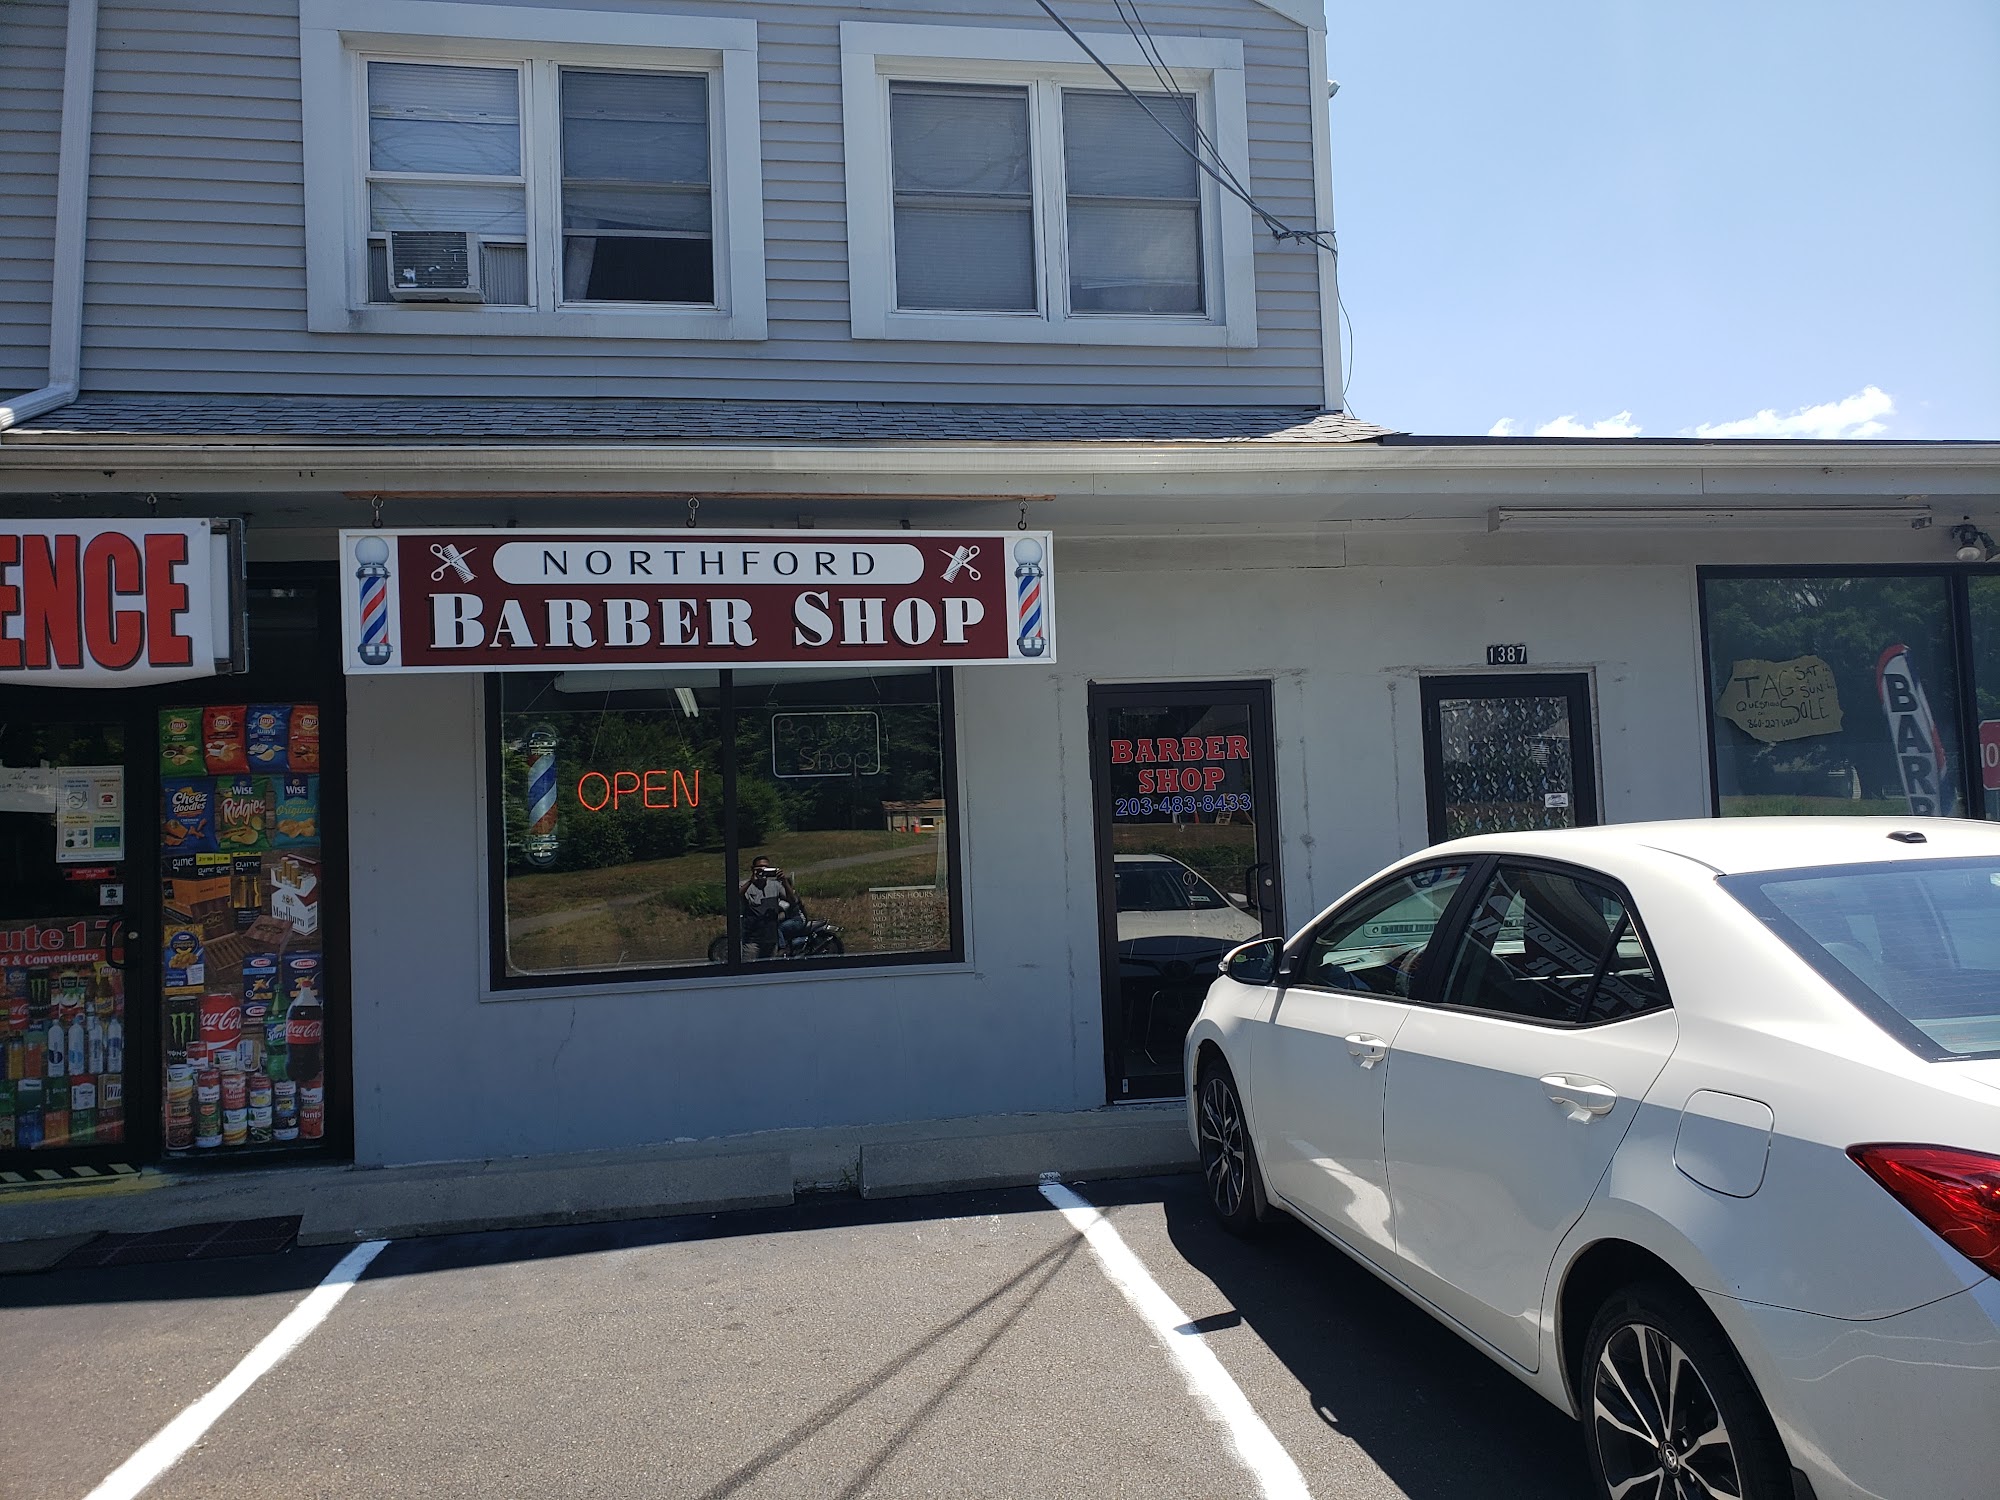 Northford Barber Shop